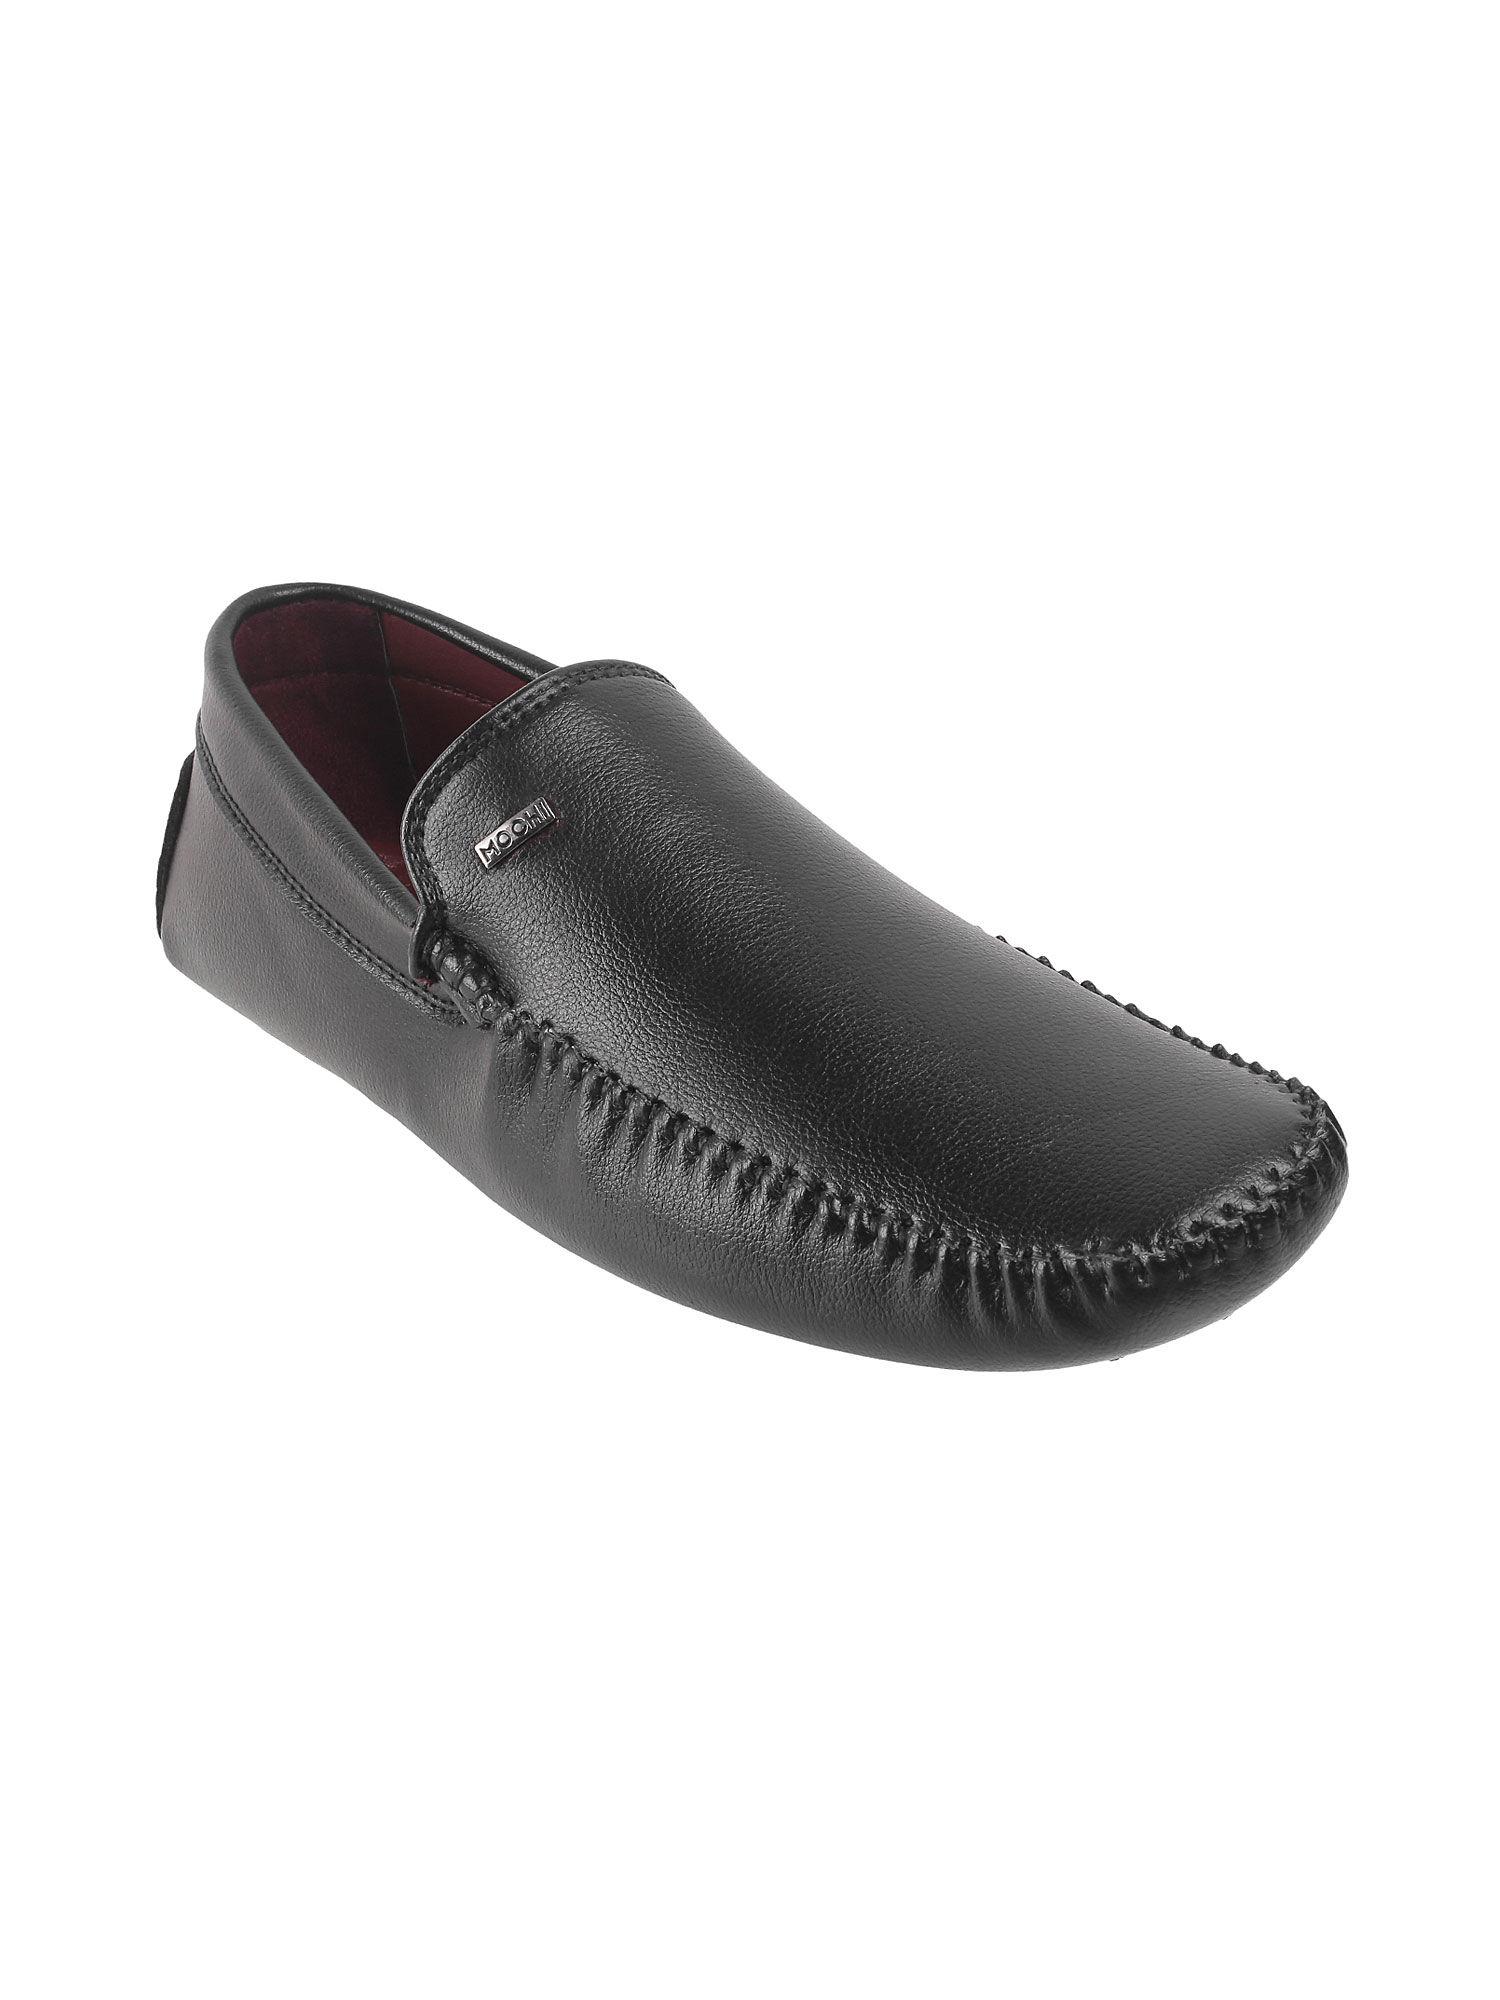 mens black driving shoes mochi black solid slip-on